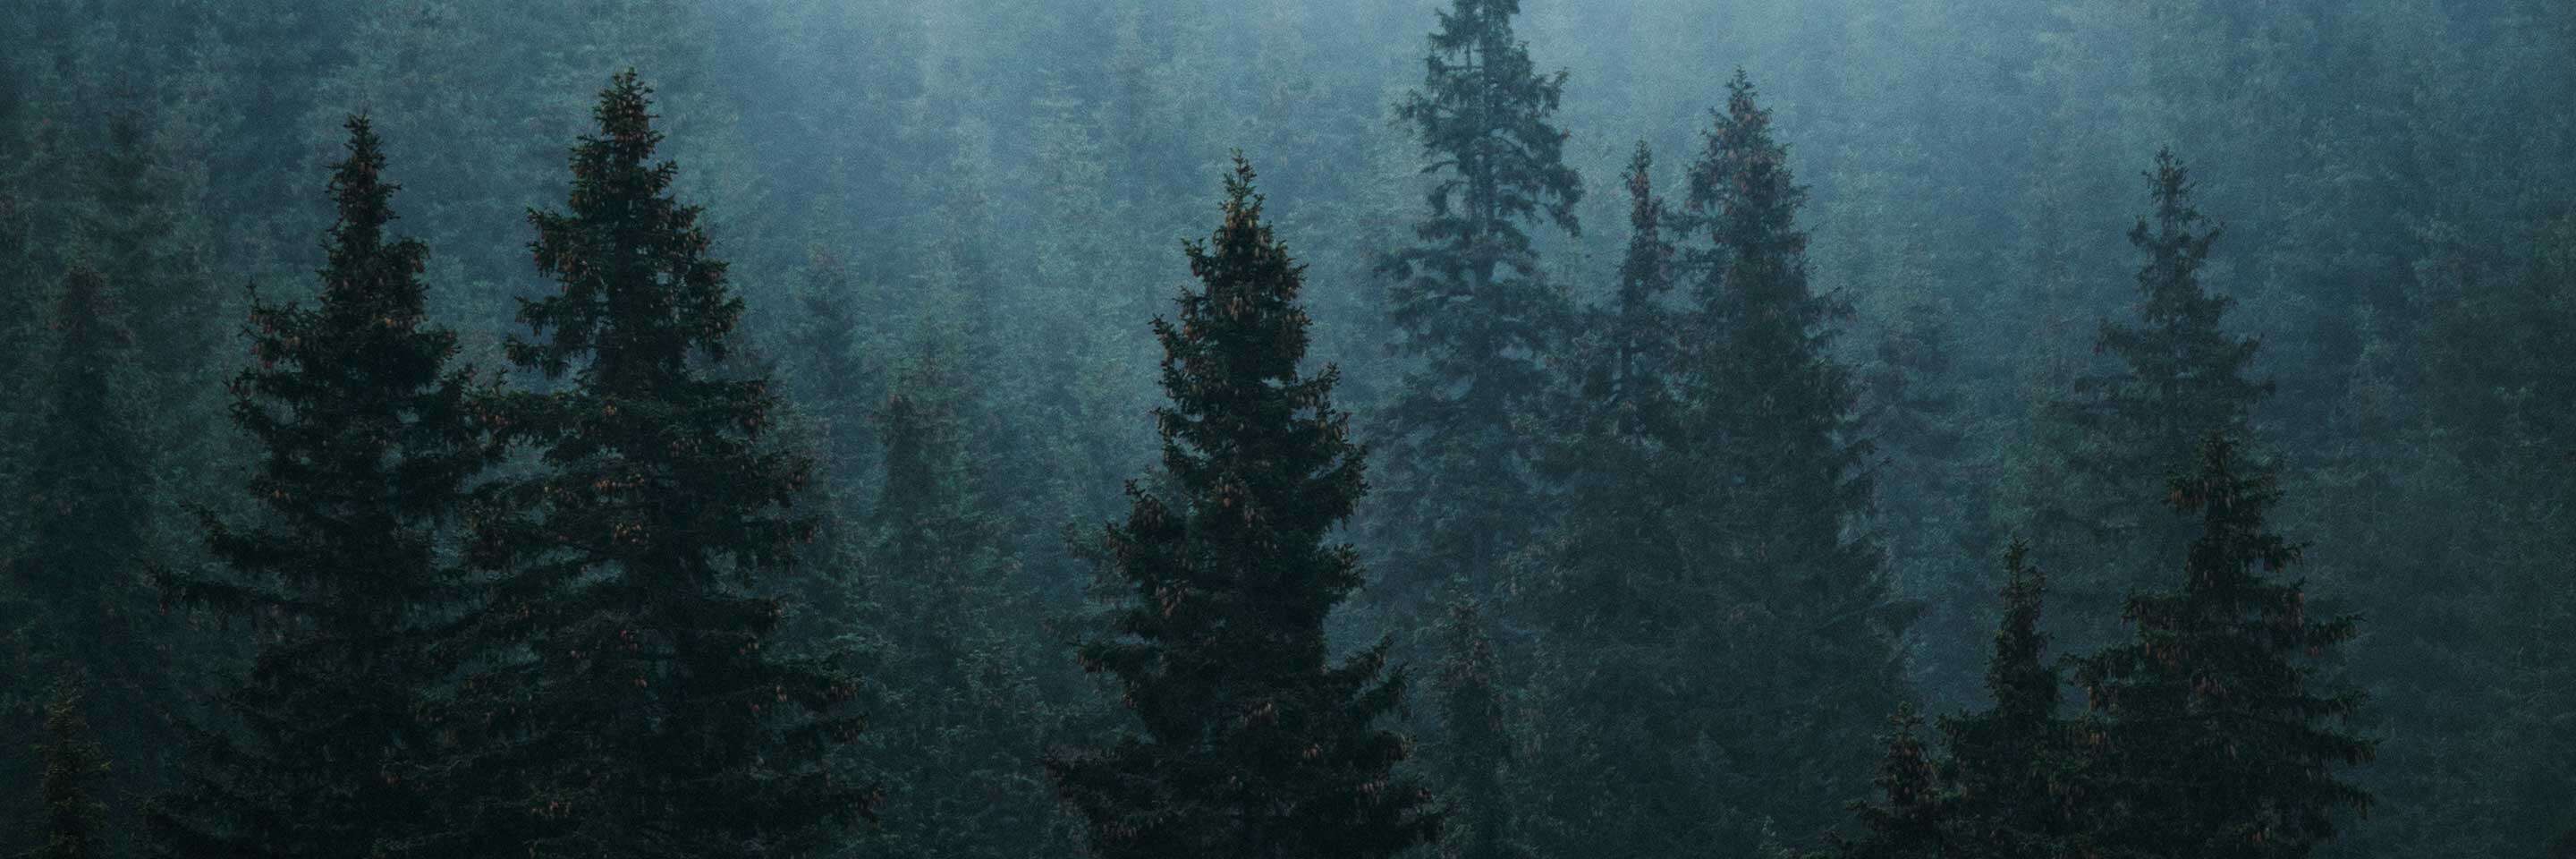 Des arbres dans la forêt